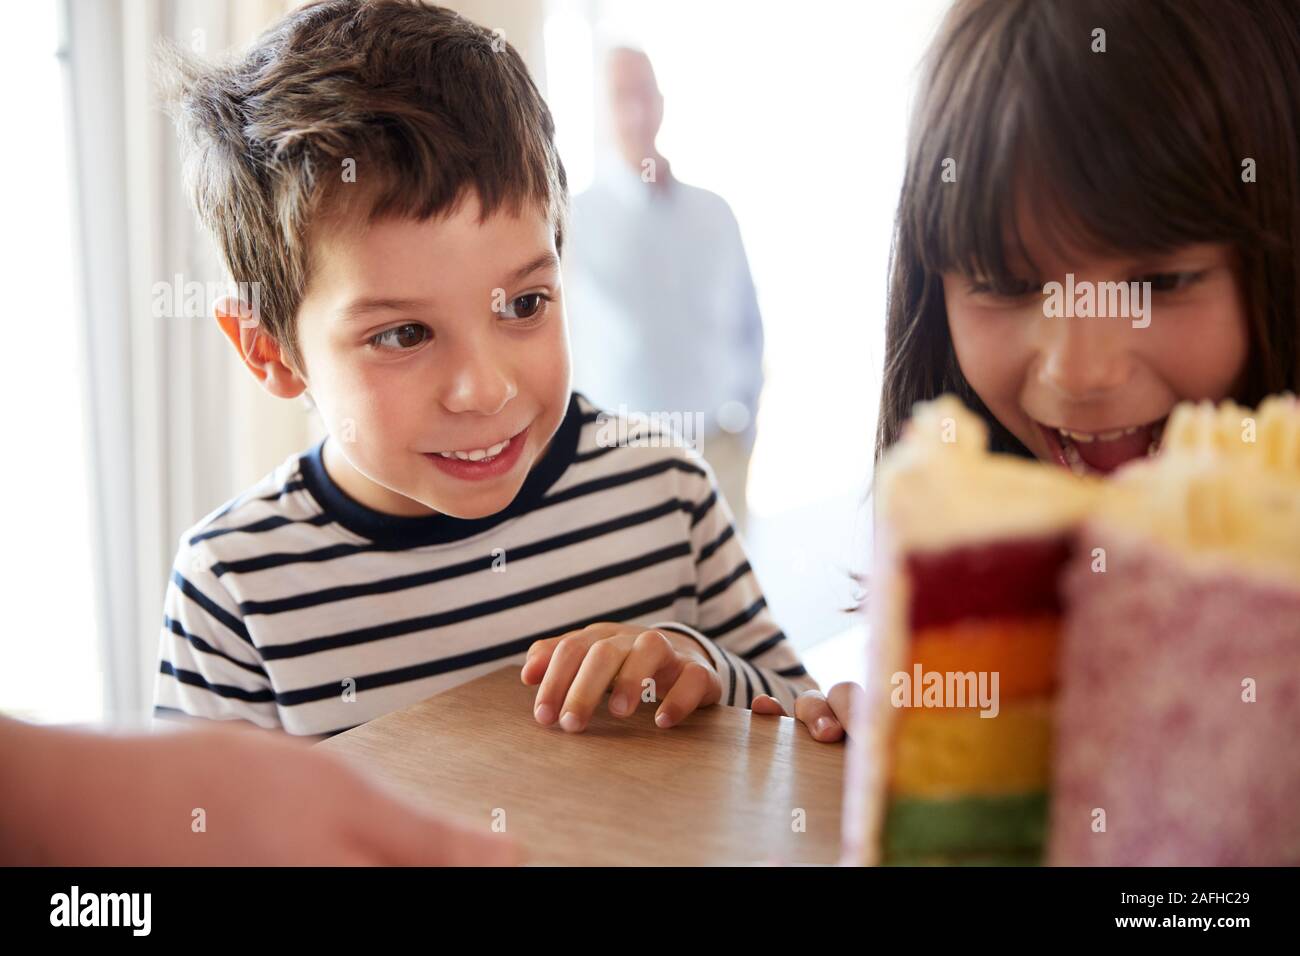 Junge Geschwister an einer bunten Geschnetzeltes Geburtstagskuchen auf einen Tisch suchen, Nahaufnahme, selektiver Fokus Stockfoto